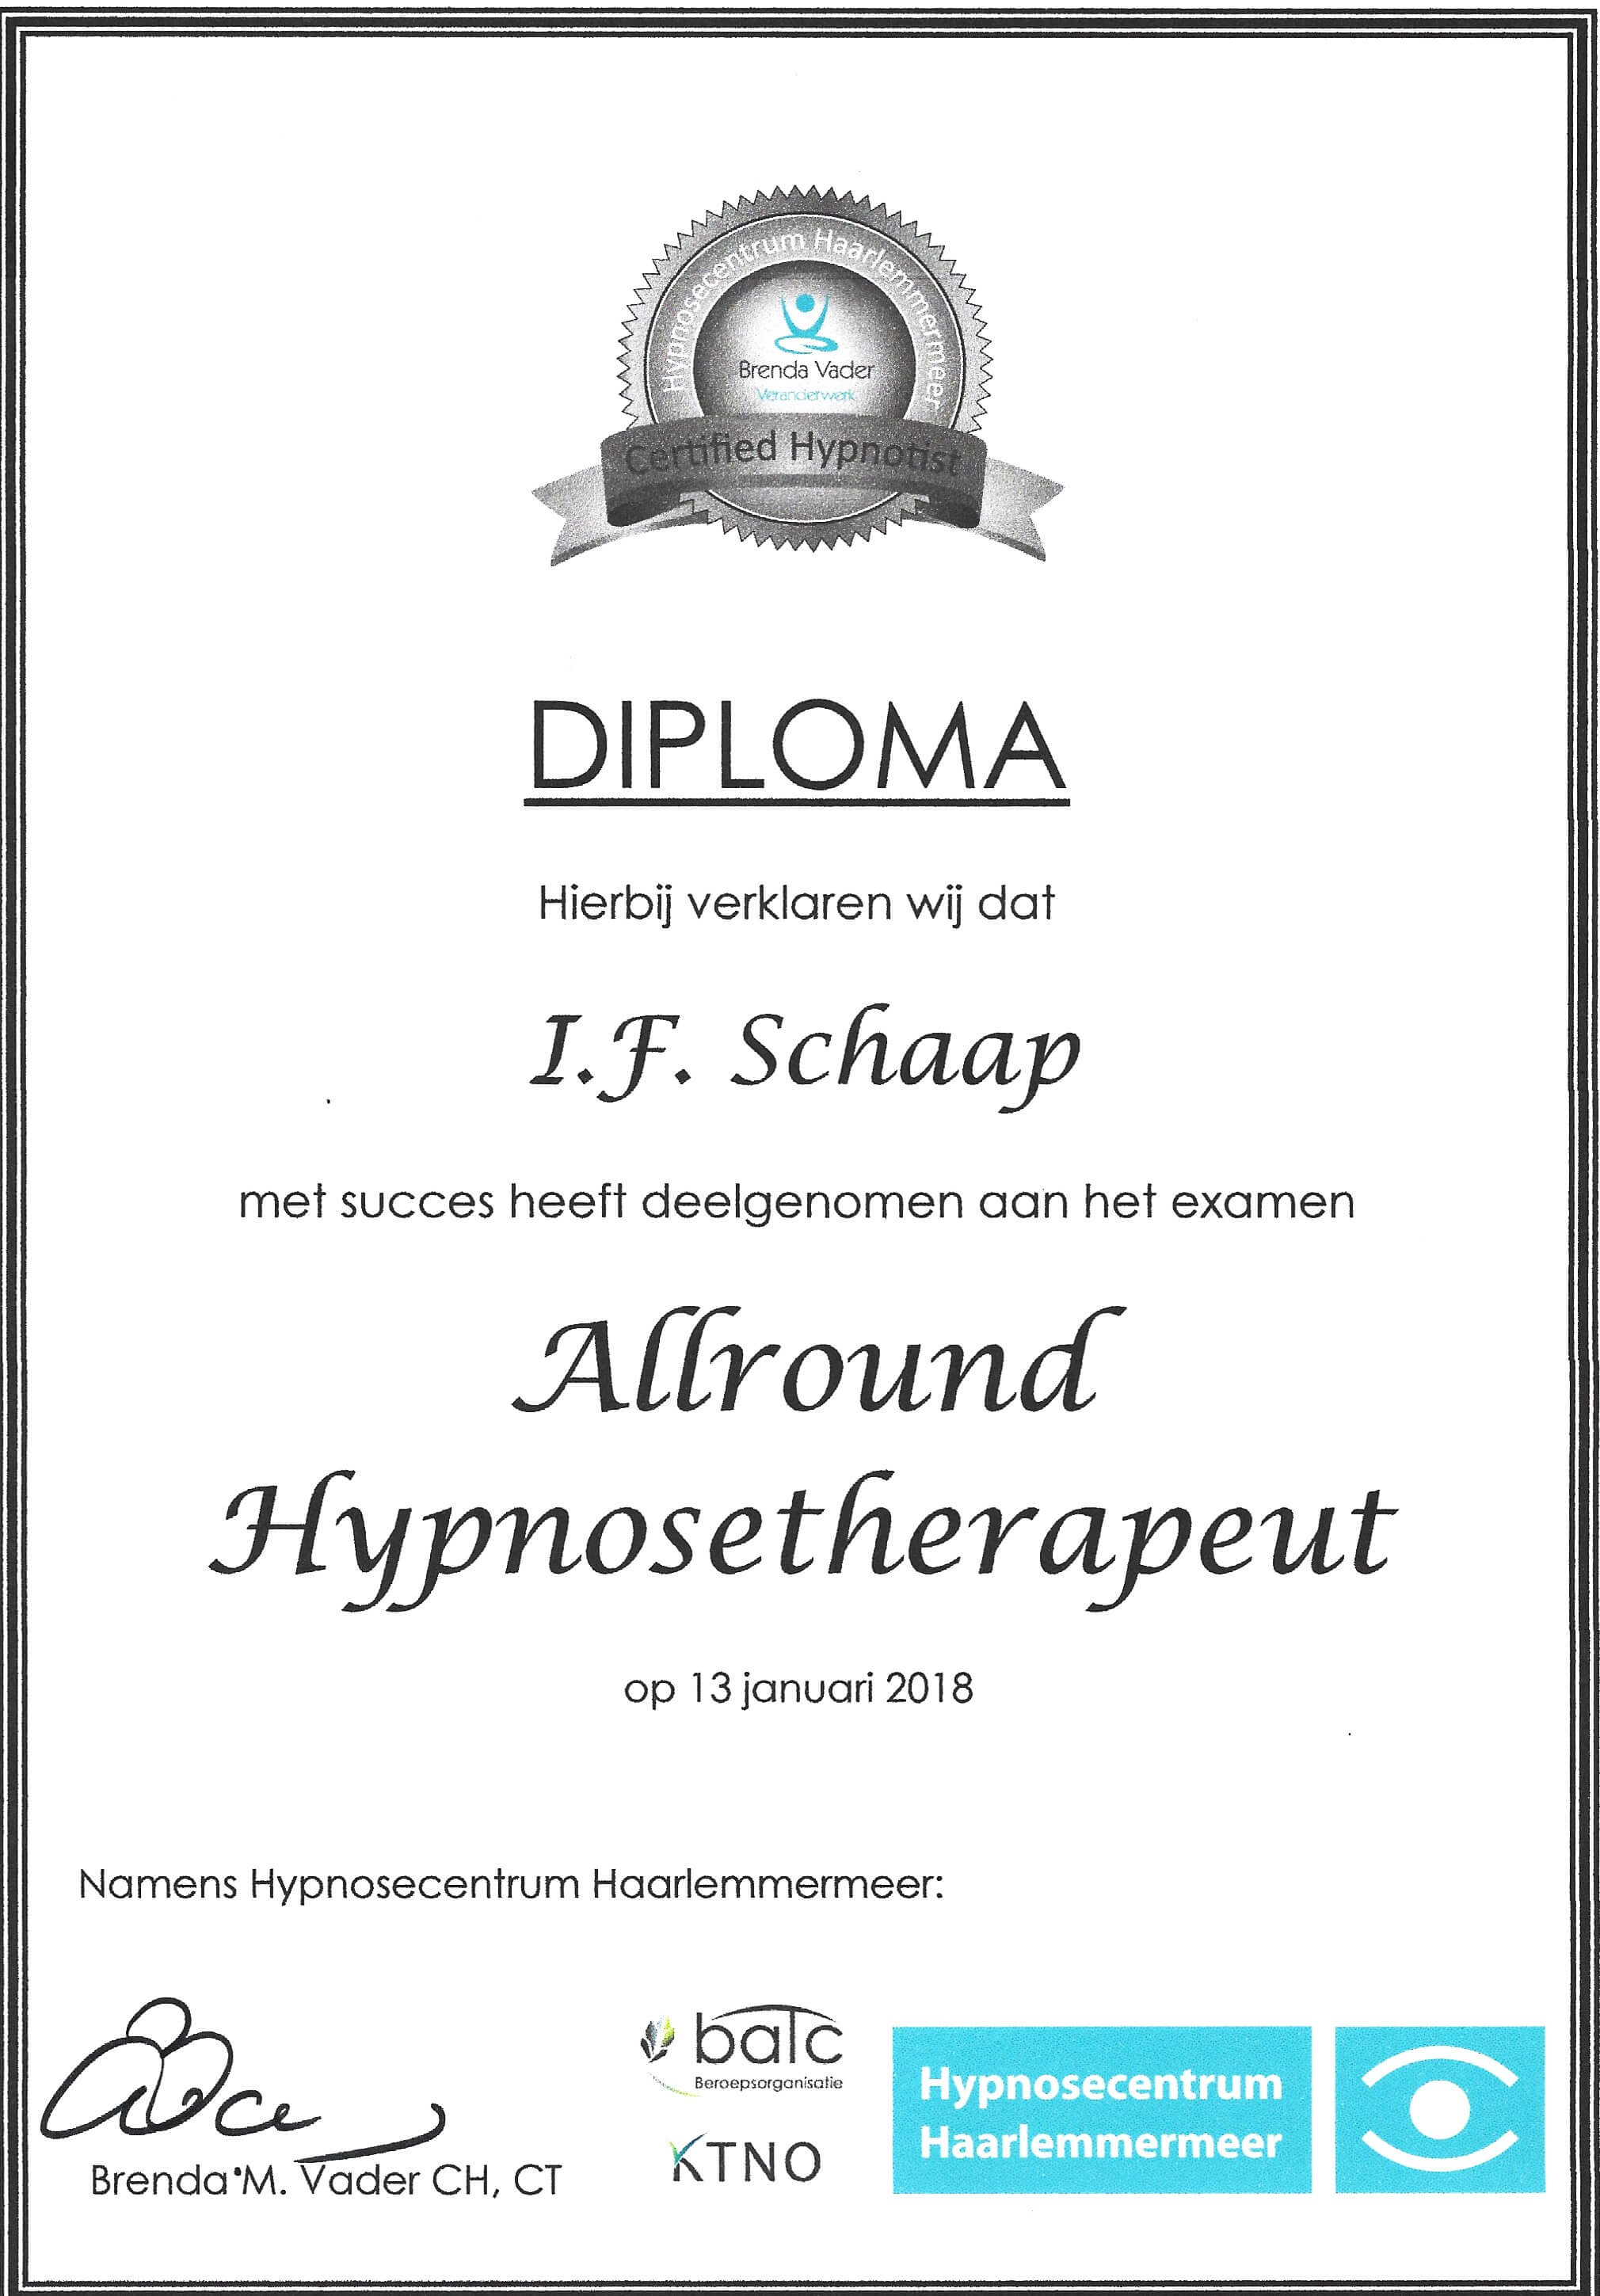 Irene Schaap Allround Hypnosetherapeut